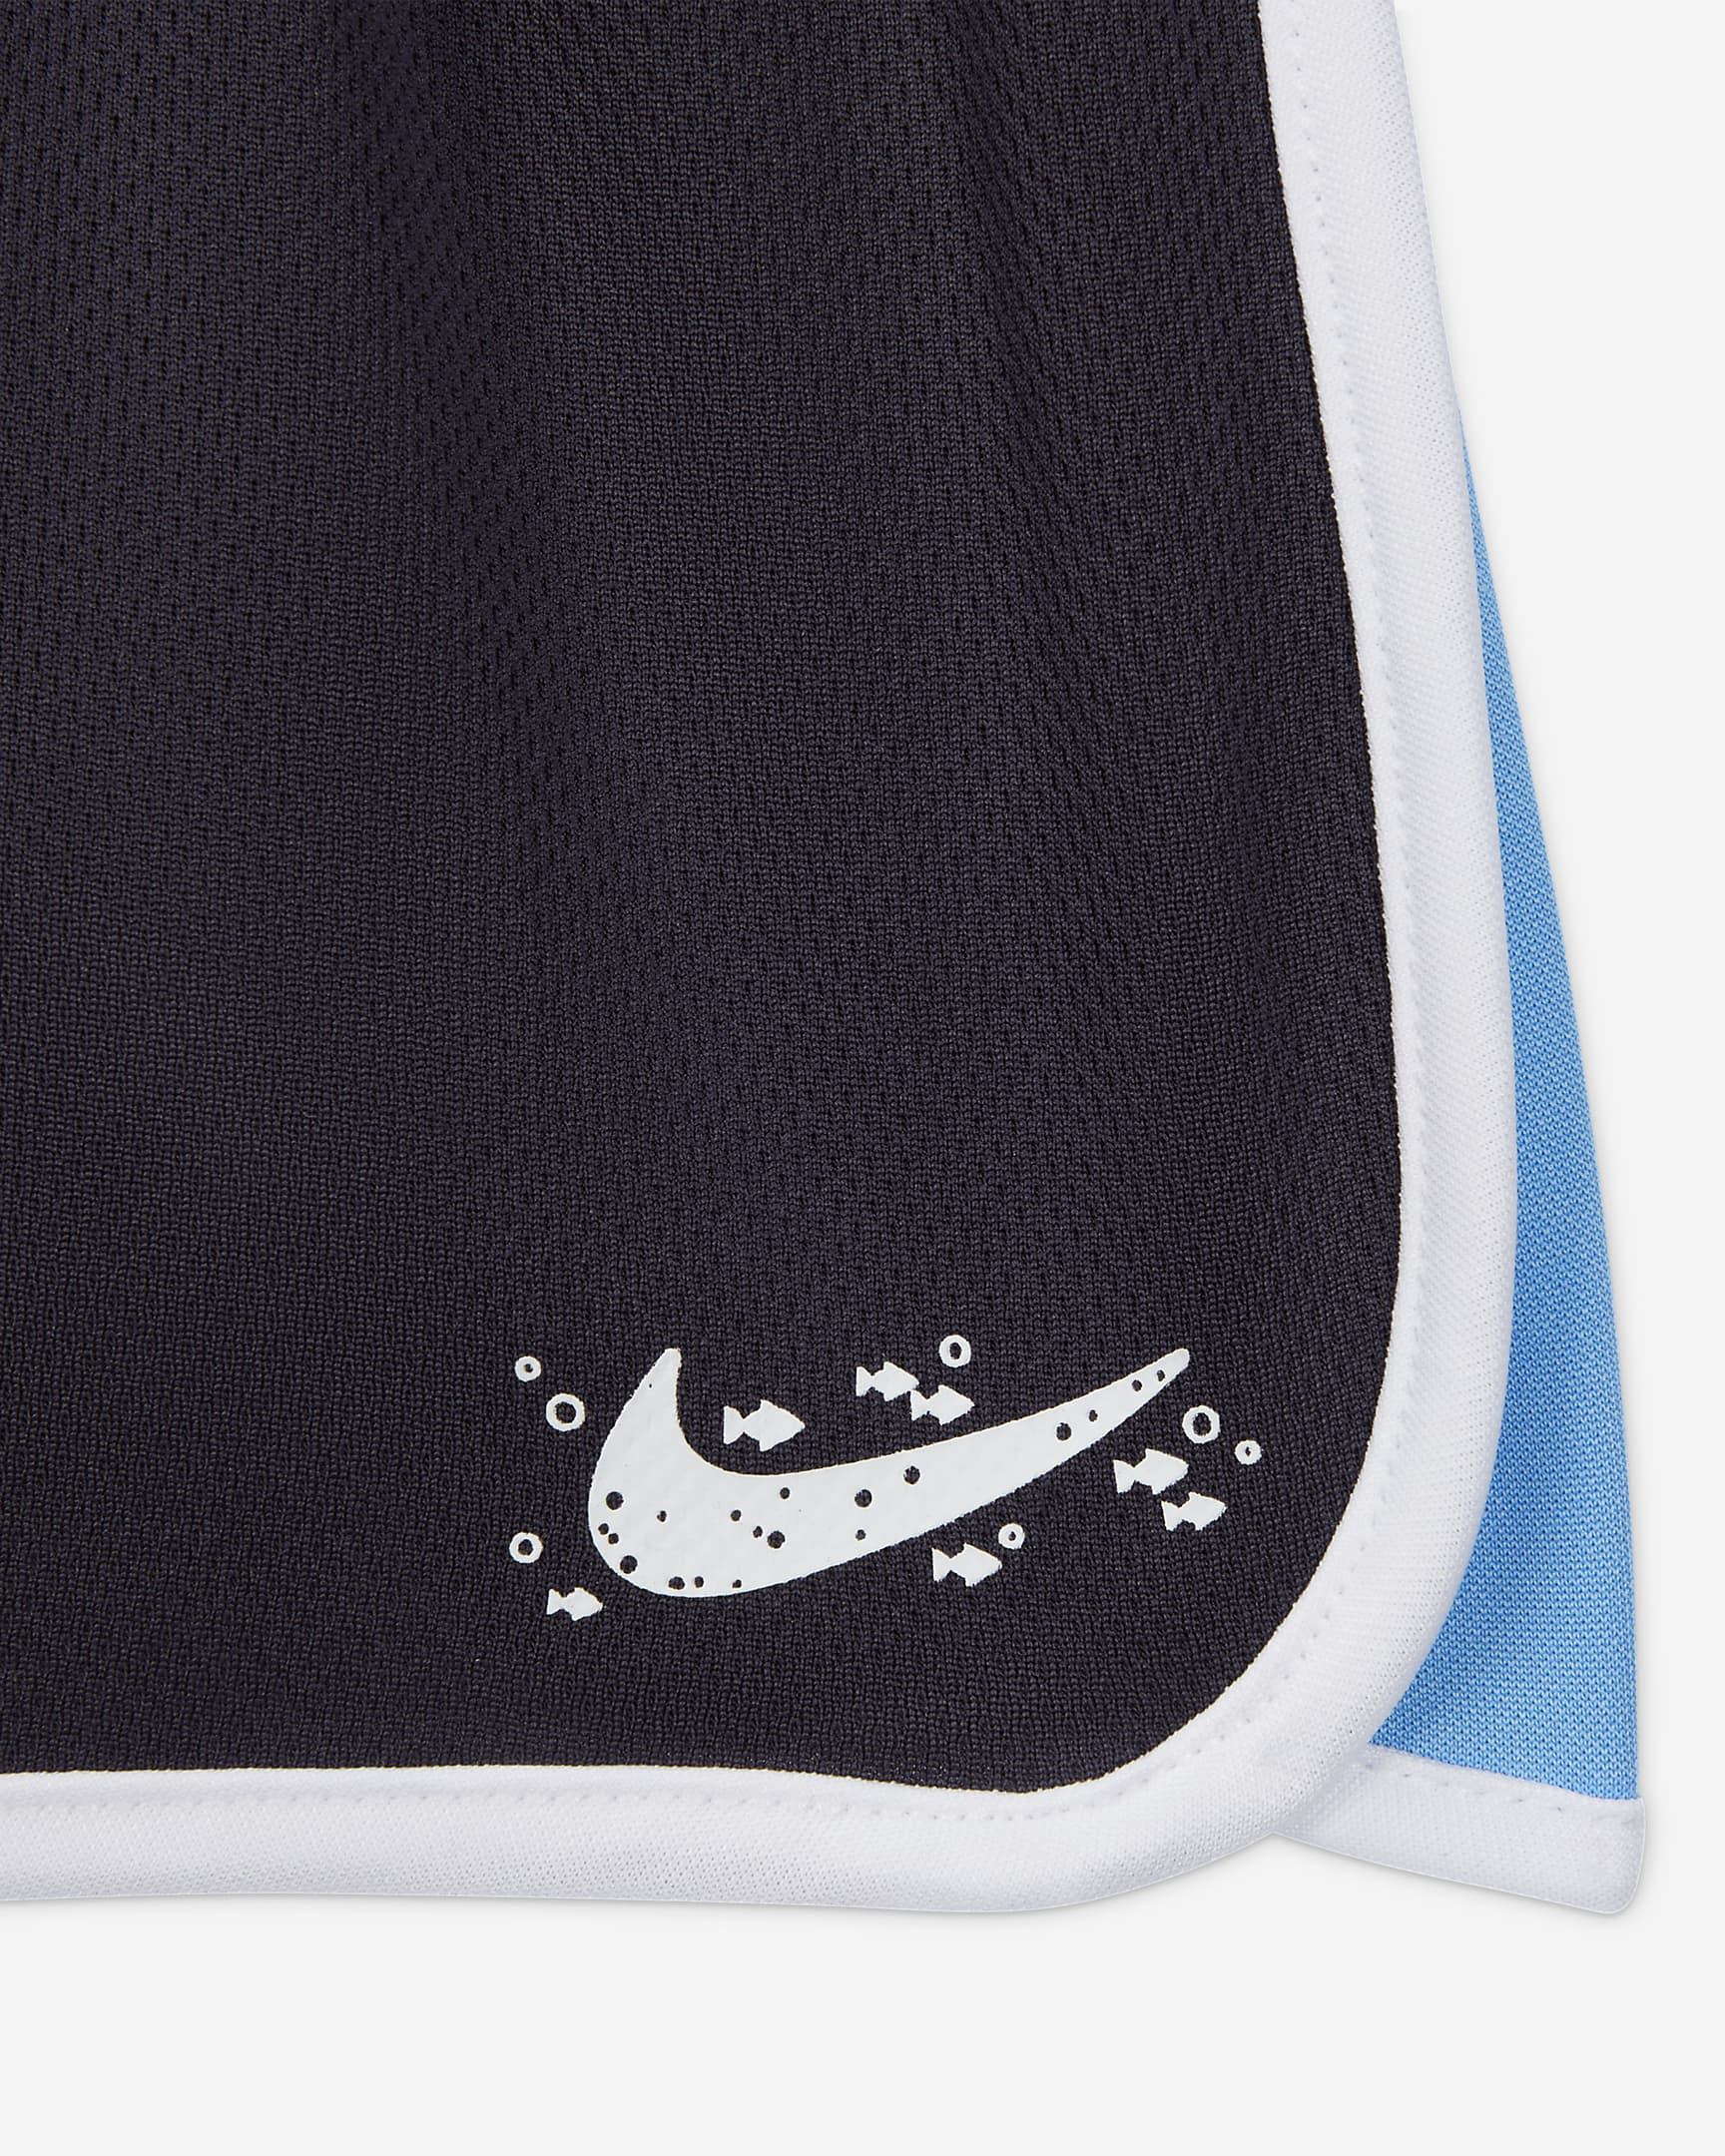 Nike Sportswear Coral Reef Mesh Shorts Set Baby 2-piece Set. Nike SE